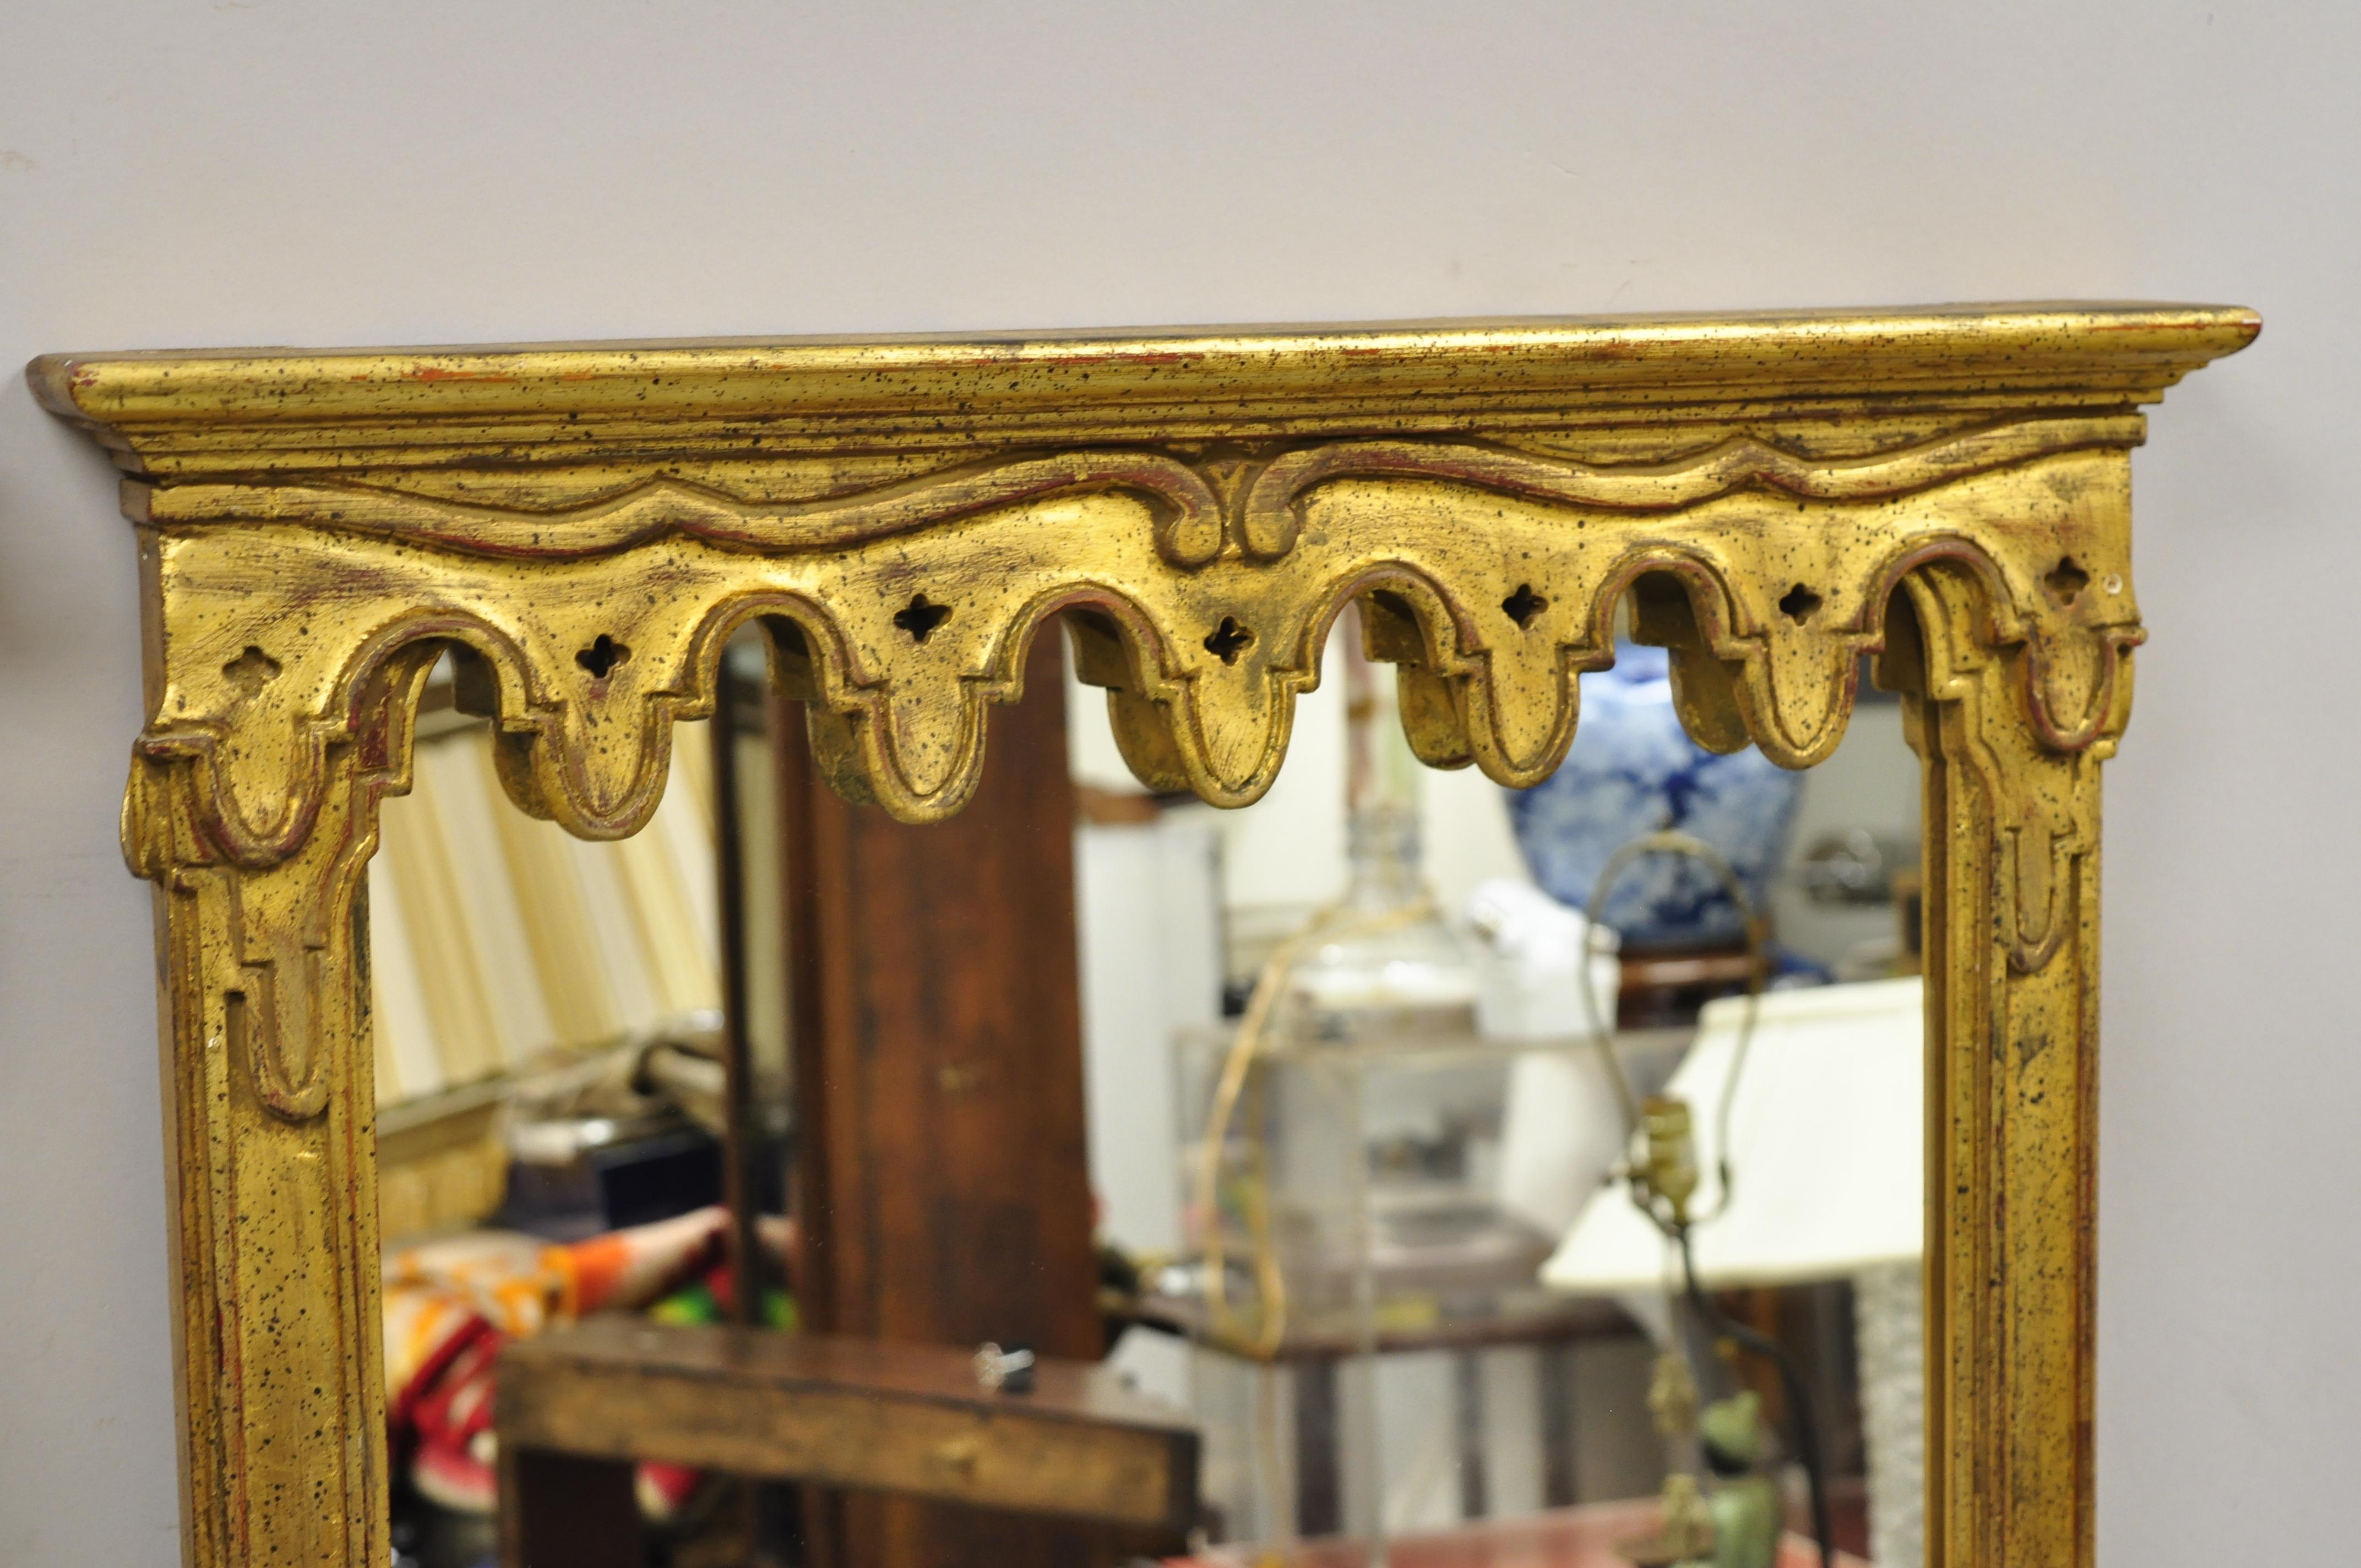 Vieux miroirs muraux trumeaux italiens Hollywood Regency en bois doré - une paire. L'article présente des cadres en bois doré sculpté avec fronton drapé, finition vieillie, détails joliment sculptés, étiquette originale, très belle paire vintage,